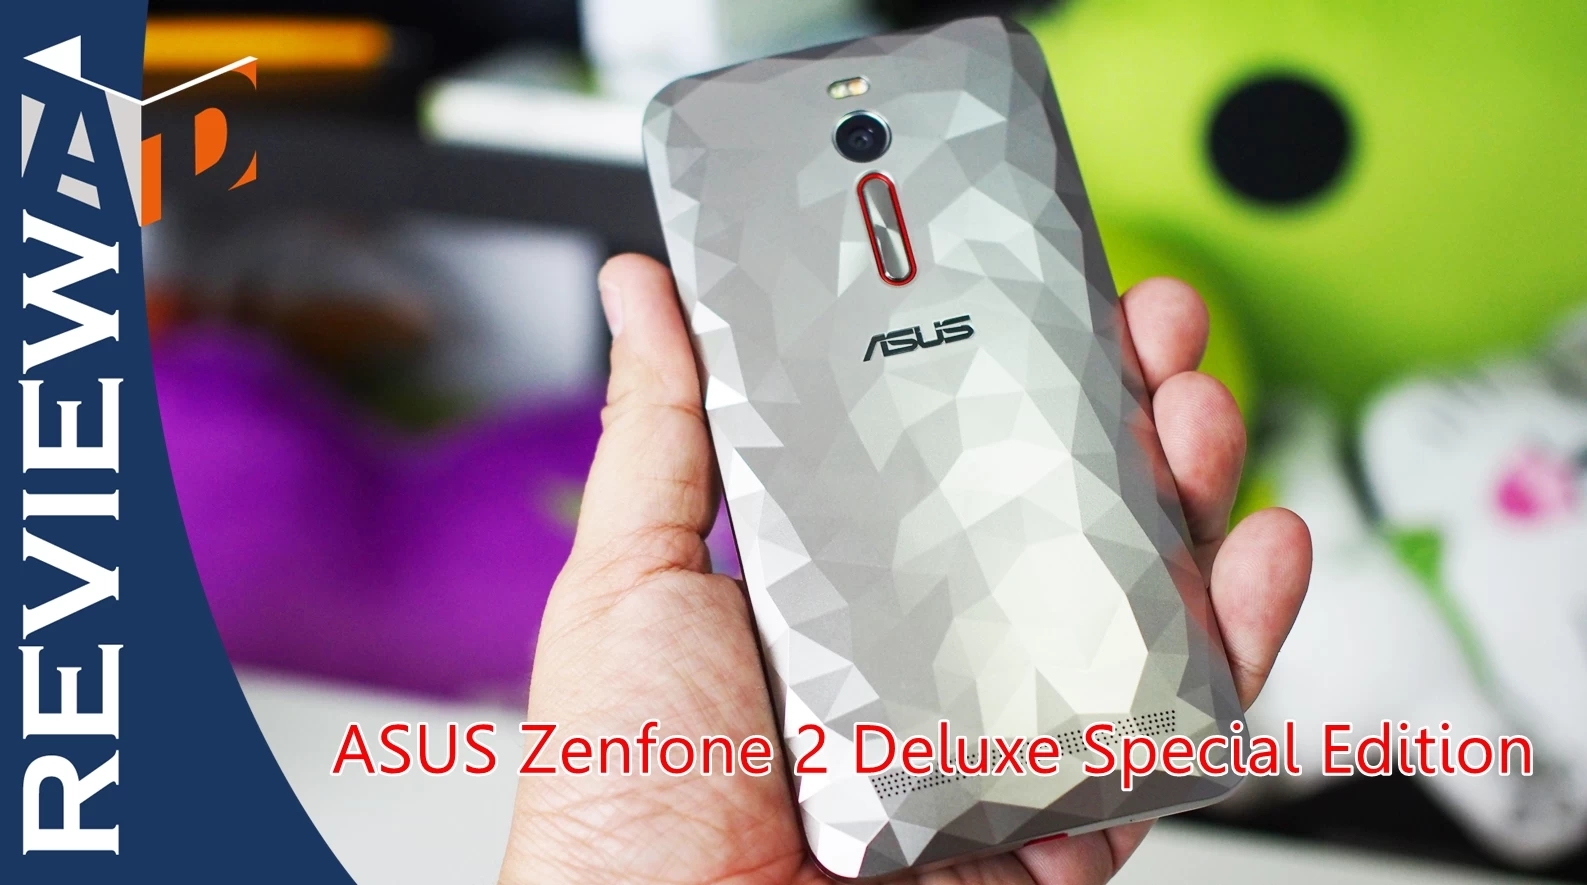 PC240332 | Android | รีวิว Asus Zenfone 2 Deluxe Special Edition หรูและแรงขึ้นอีกนิด พร้อมหน่วยความจำระดับ 128GB + 128GB